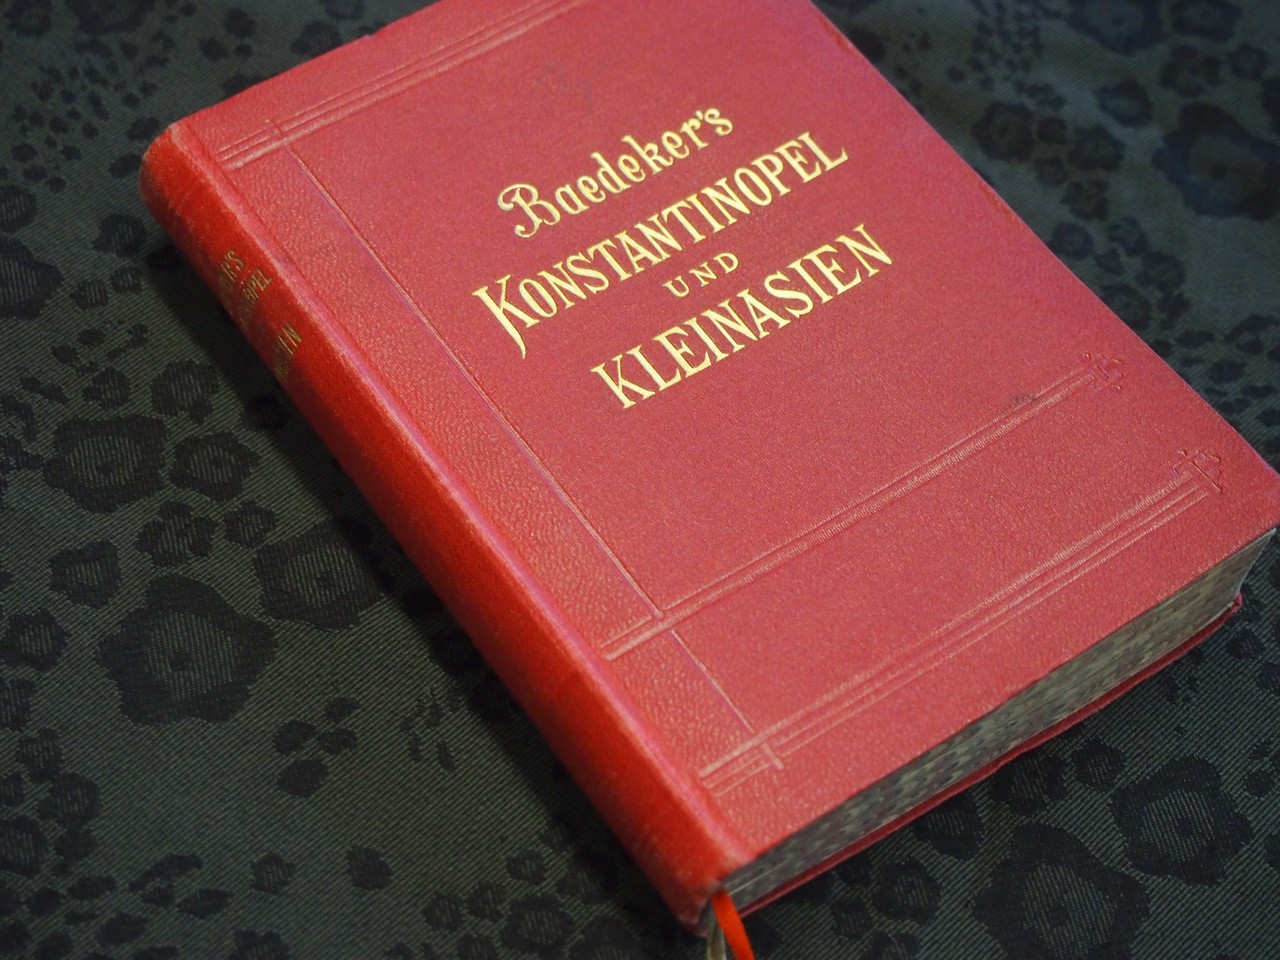 Das Handbuch für Reisende „Konstantinopel und das westliche Kleinasien“ von 1905 war ein praktischer Ratgeber für Orient-Reisende um die Jahrhundertwende. (Foto: Cantauw)